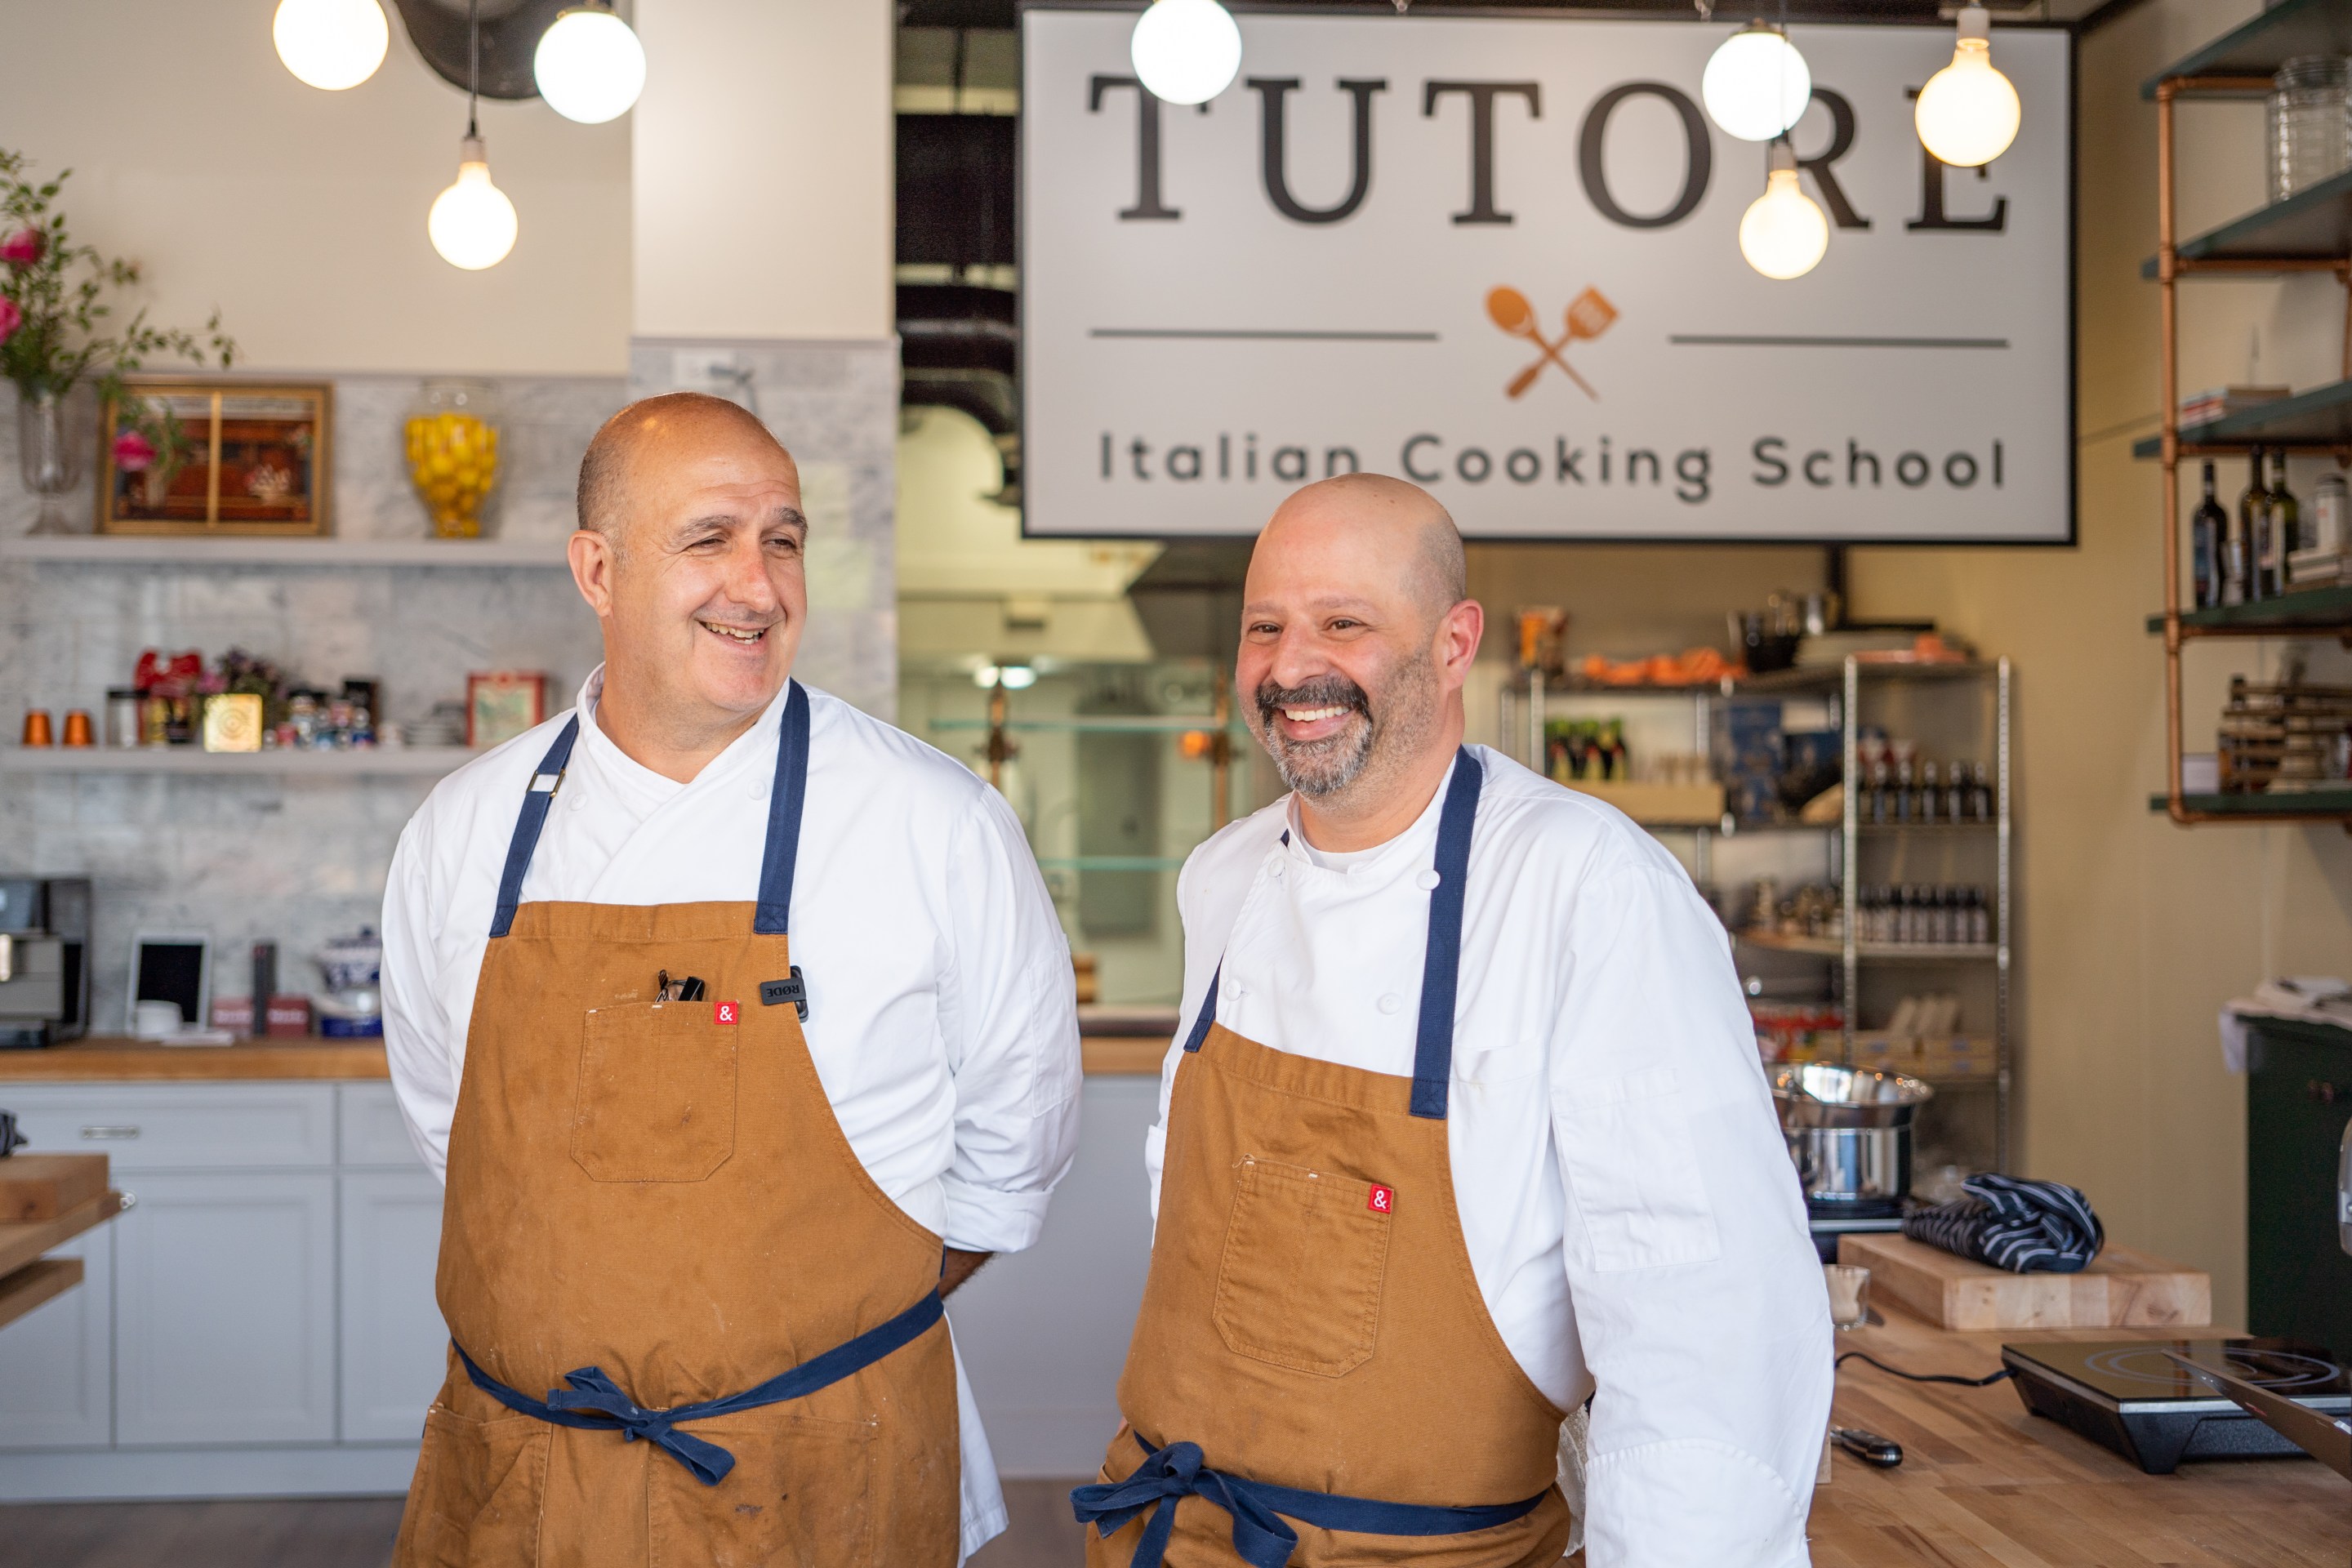 Chef Dean Zanella and Chef James De Marte of Tutore Cooking School.